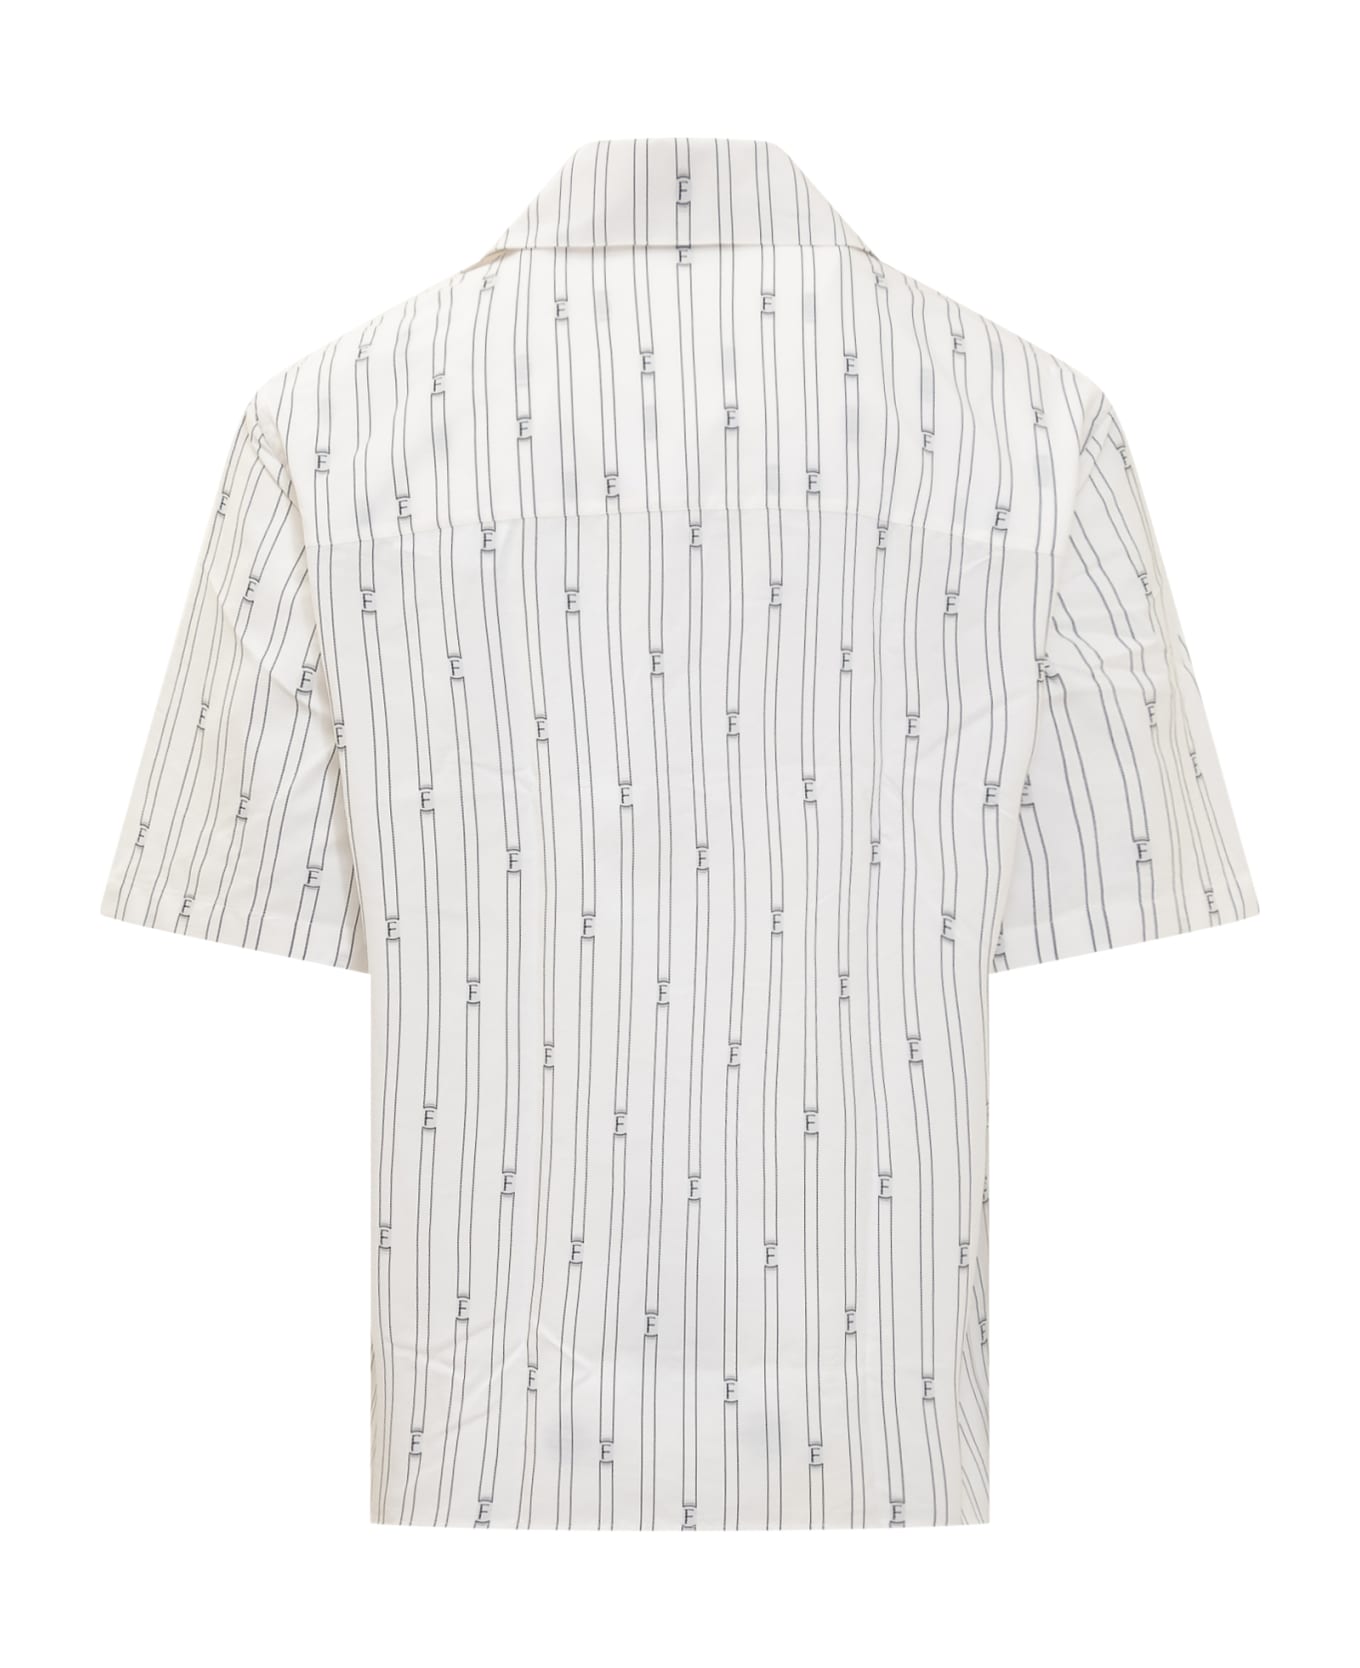 Ferragamo F Shirt - OPTIC WHITE/NERO